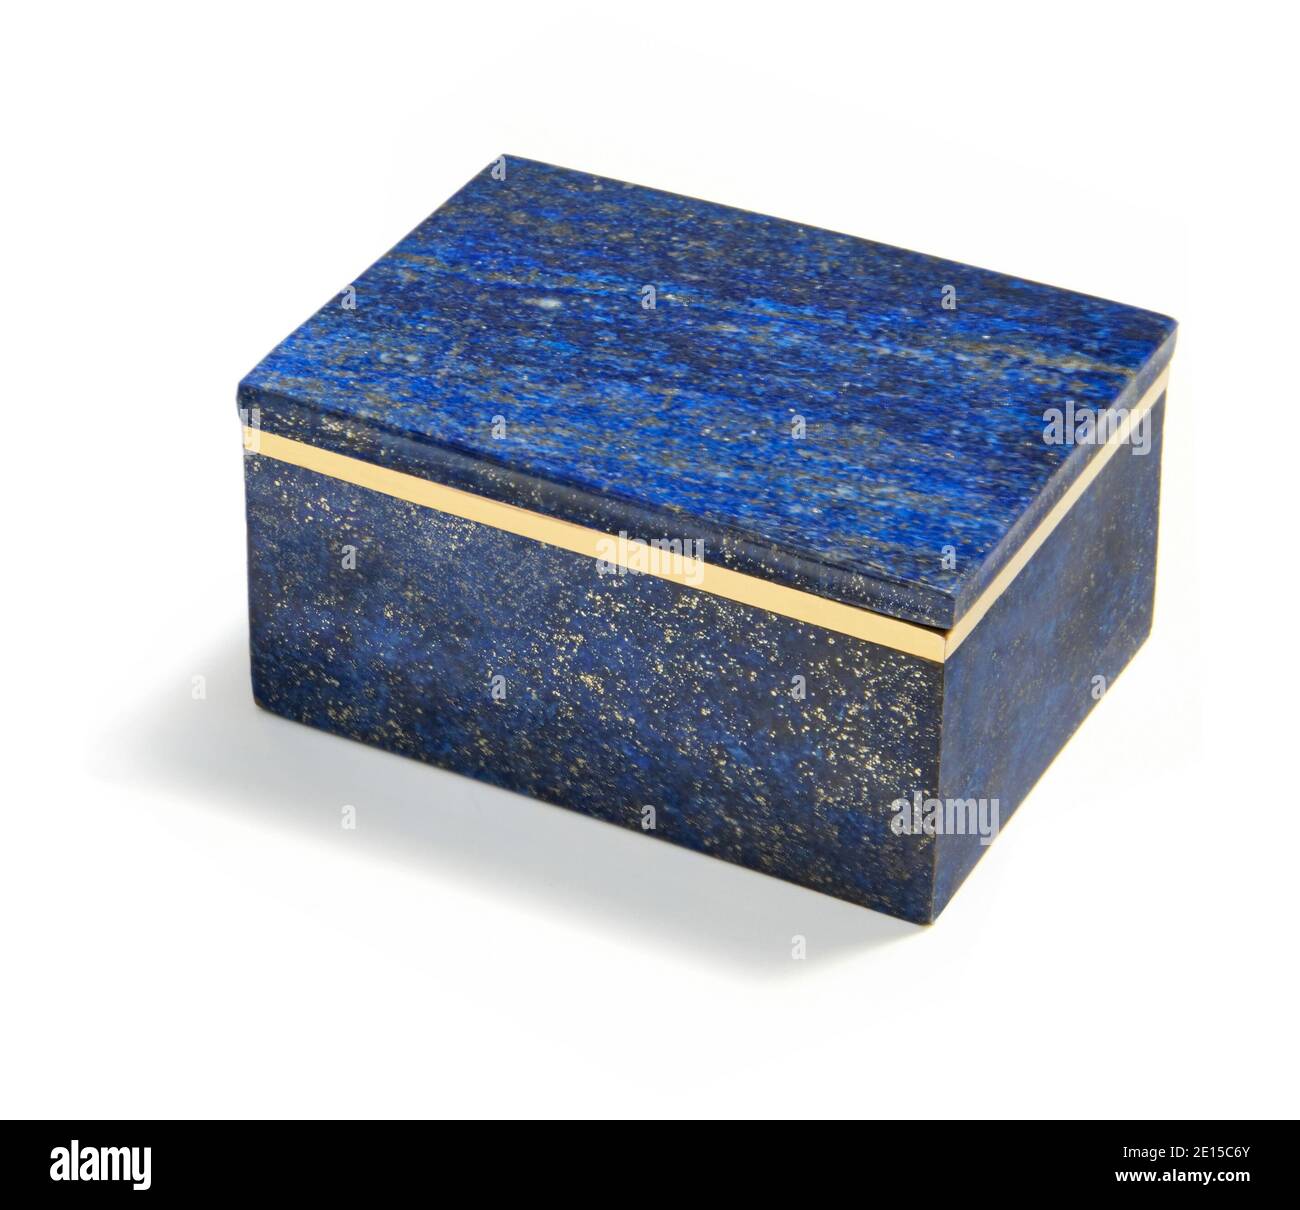 Blue Lapis boîte de taille moyenne conçue par Anna Rabinowicz photographiée sur fond blanc. Banque D'Images